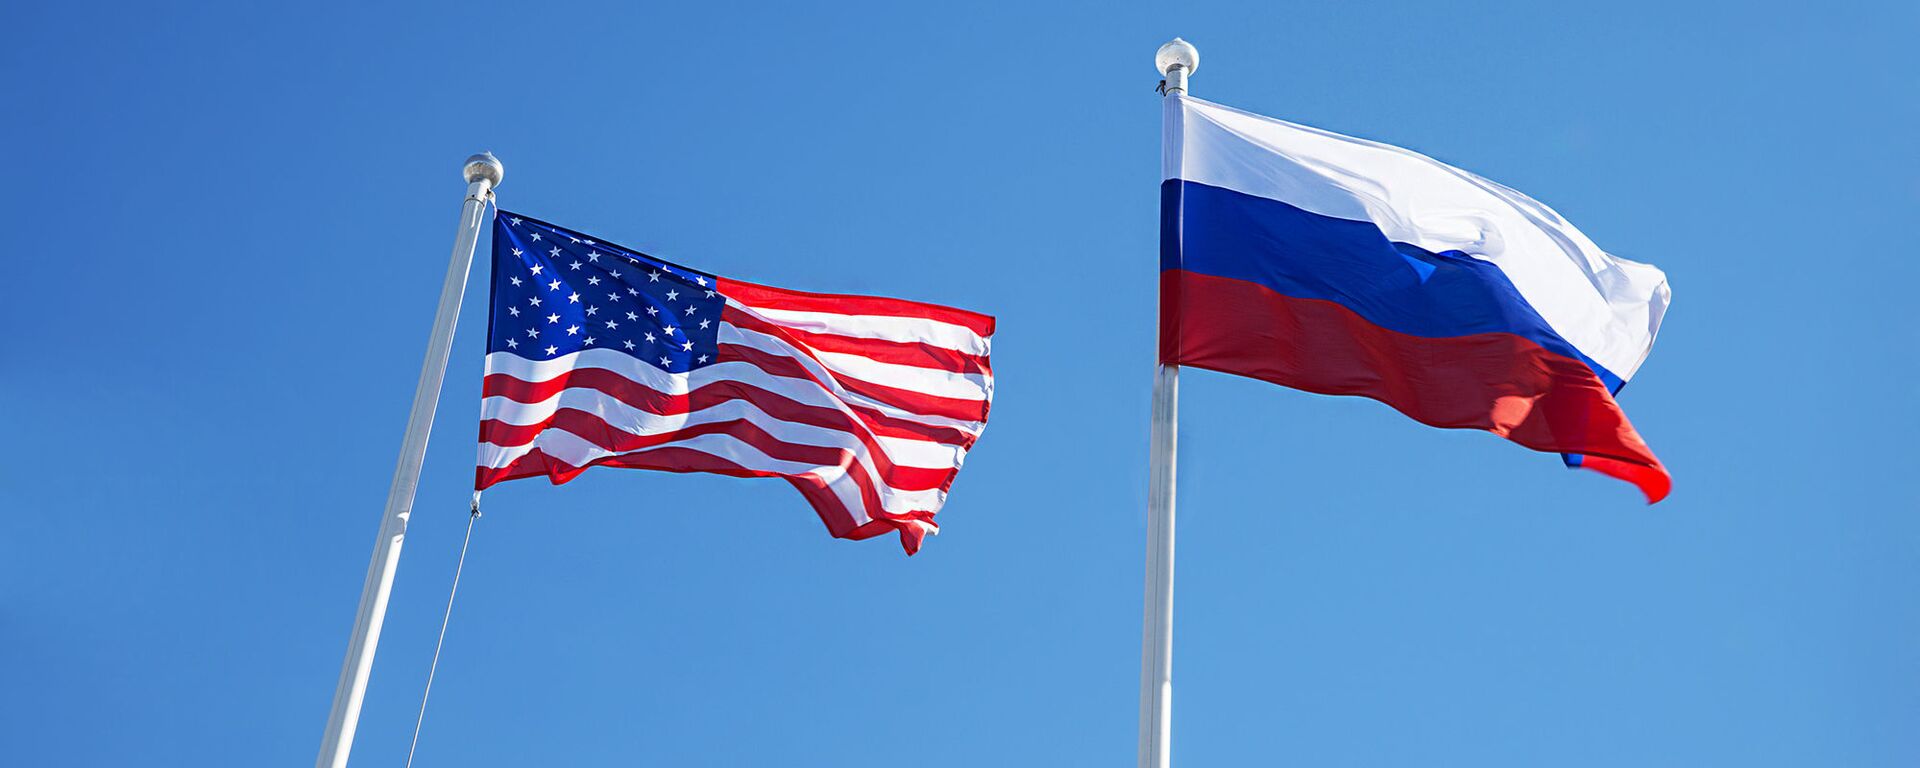 Американский и российский флаги - Sputnik Lietuva, 1920, 26.05.2021